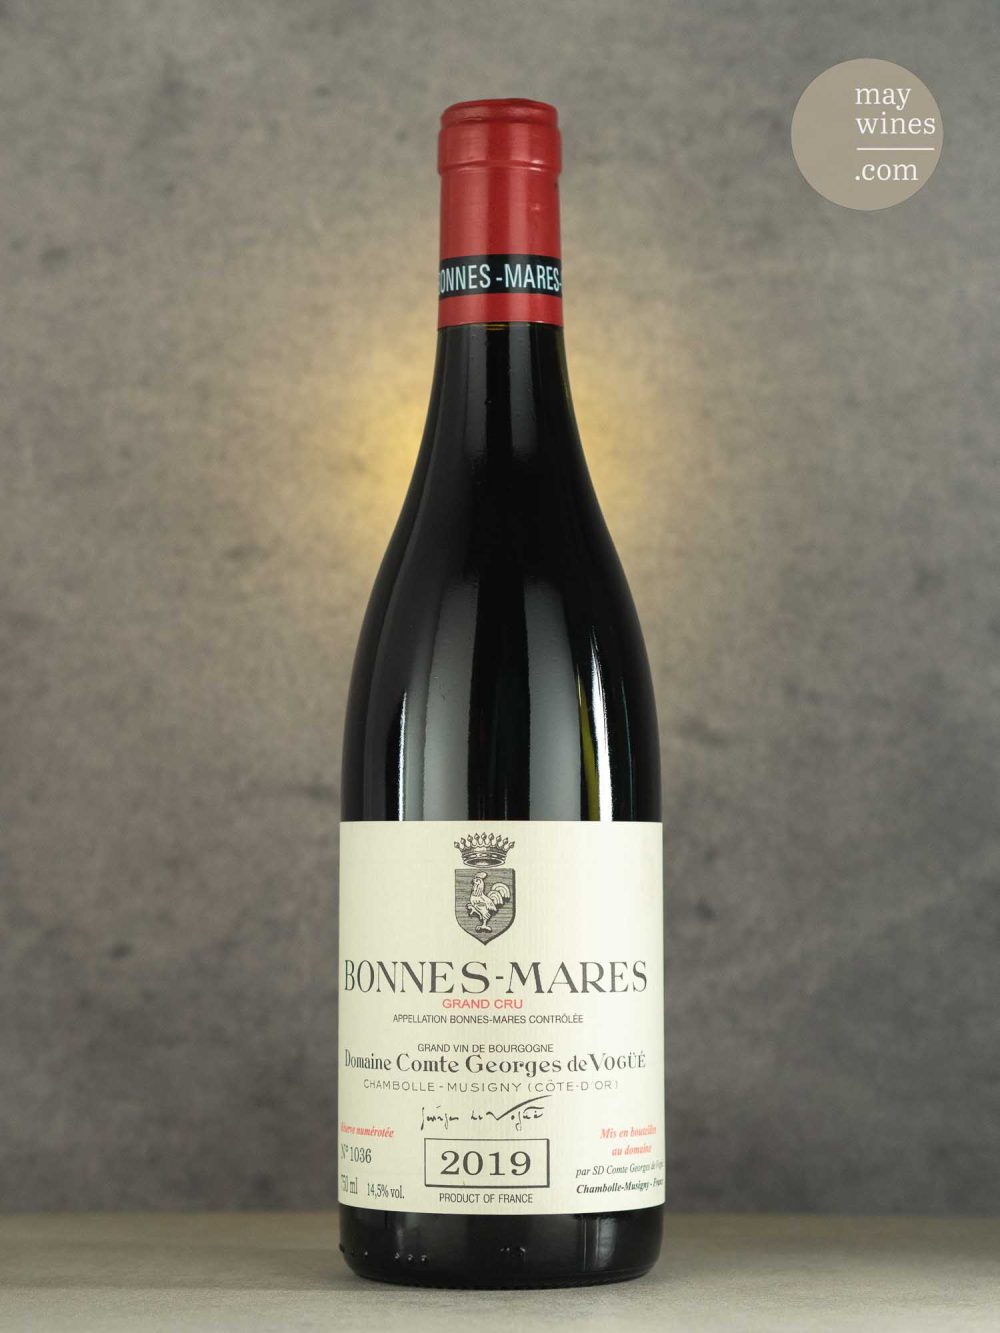 May Wines – Rotwein – 2019 Bonnes Mares Grand Cru - Domaine Comte Georges de Vogüé